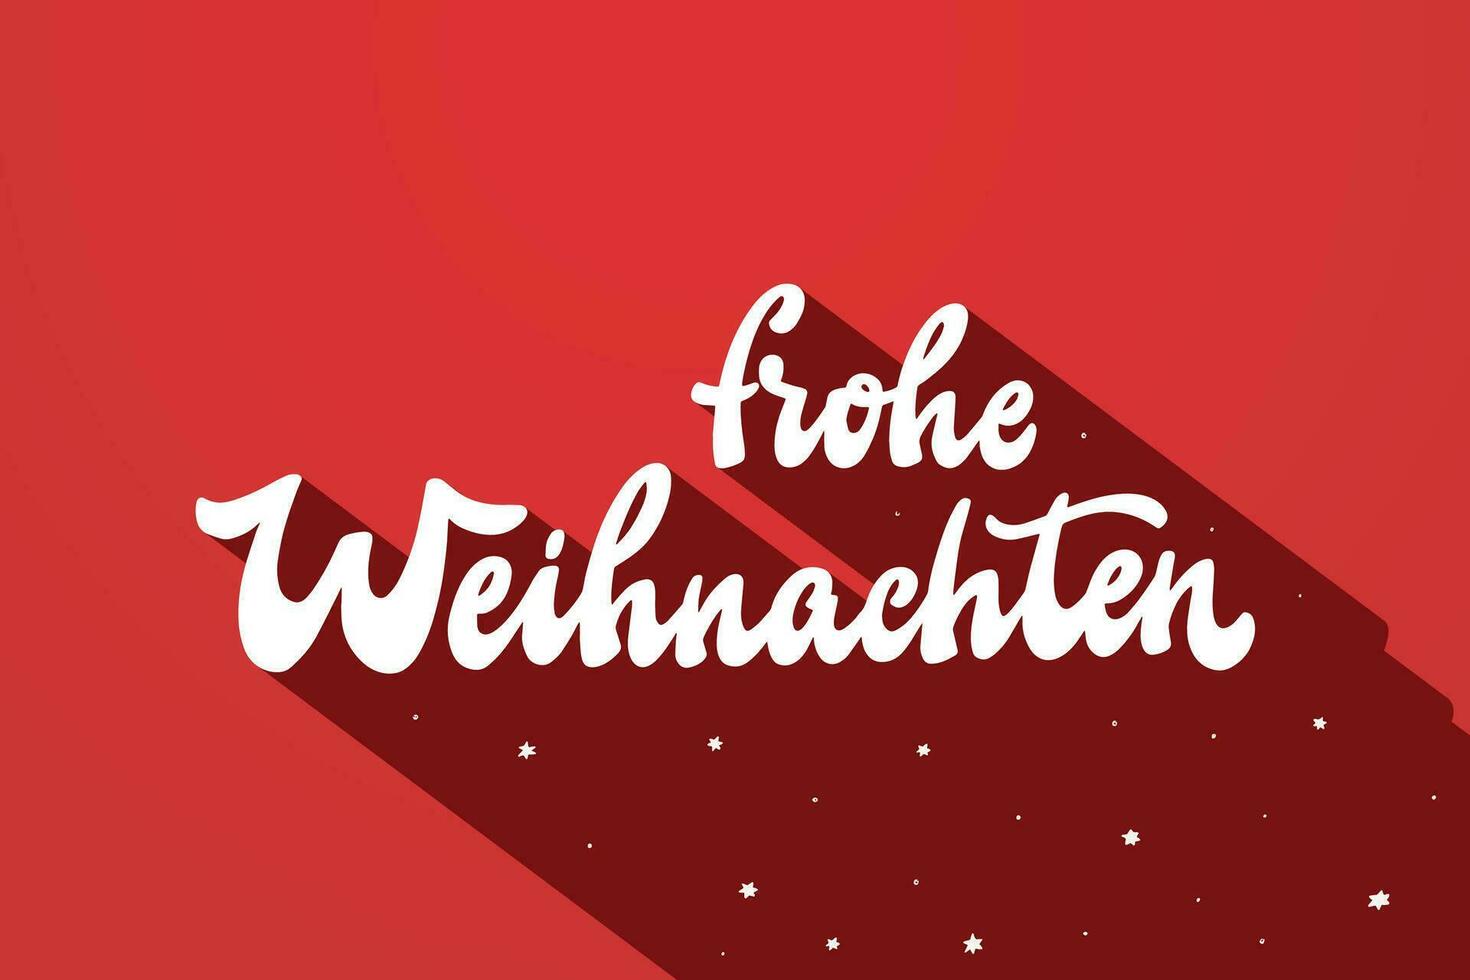 alemán letras citar frohe Weihnachten - Traducción alegre Navidad para huellas dactilares, tarjetas, pancartas, señales, invitaciones, carteles, etc. eps 10 vector